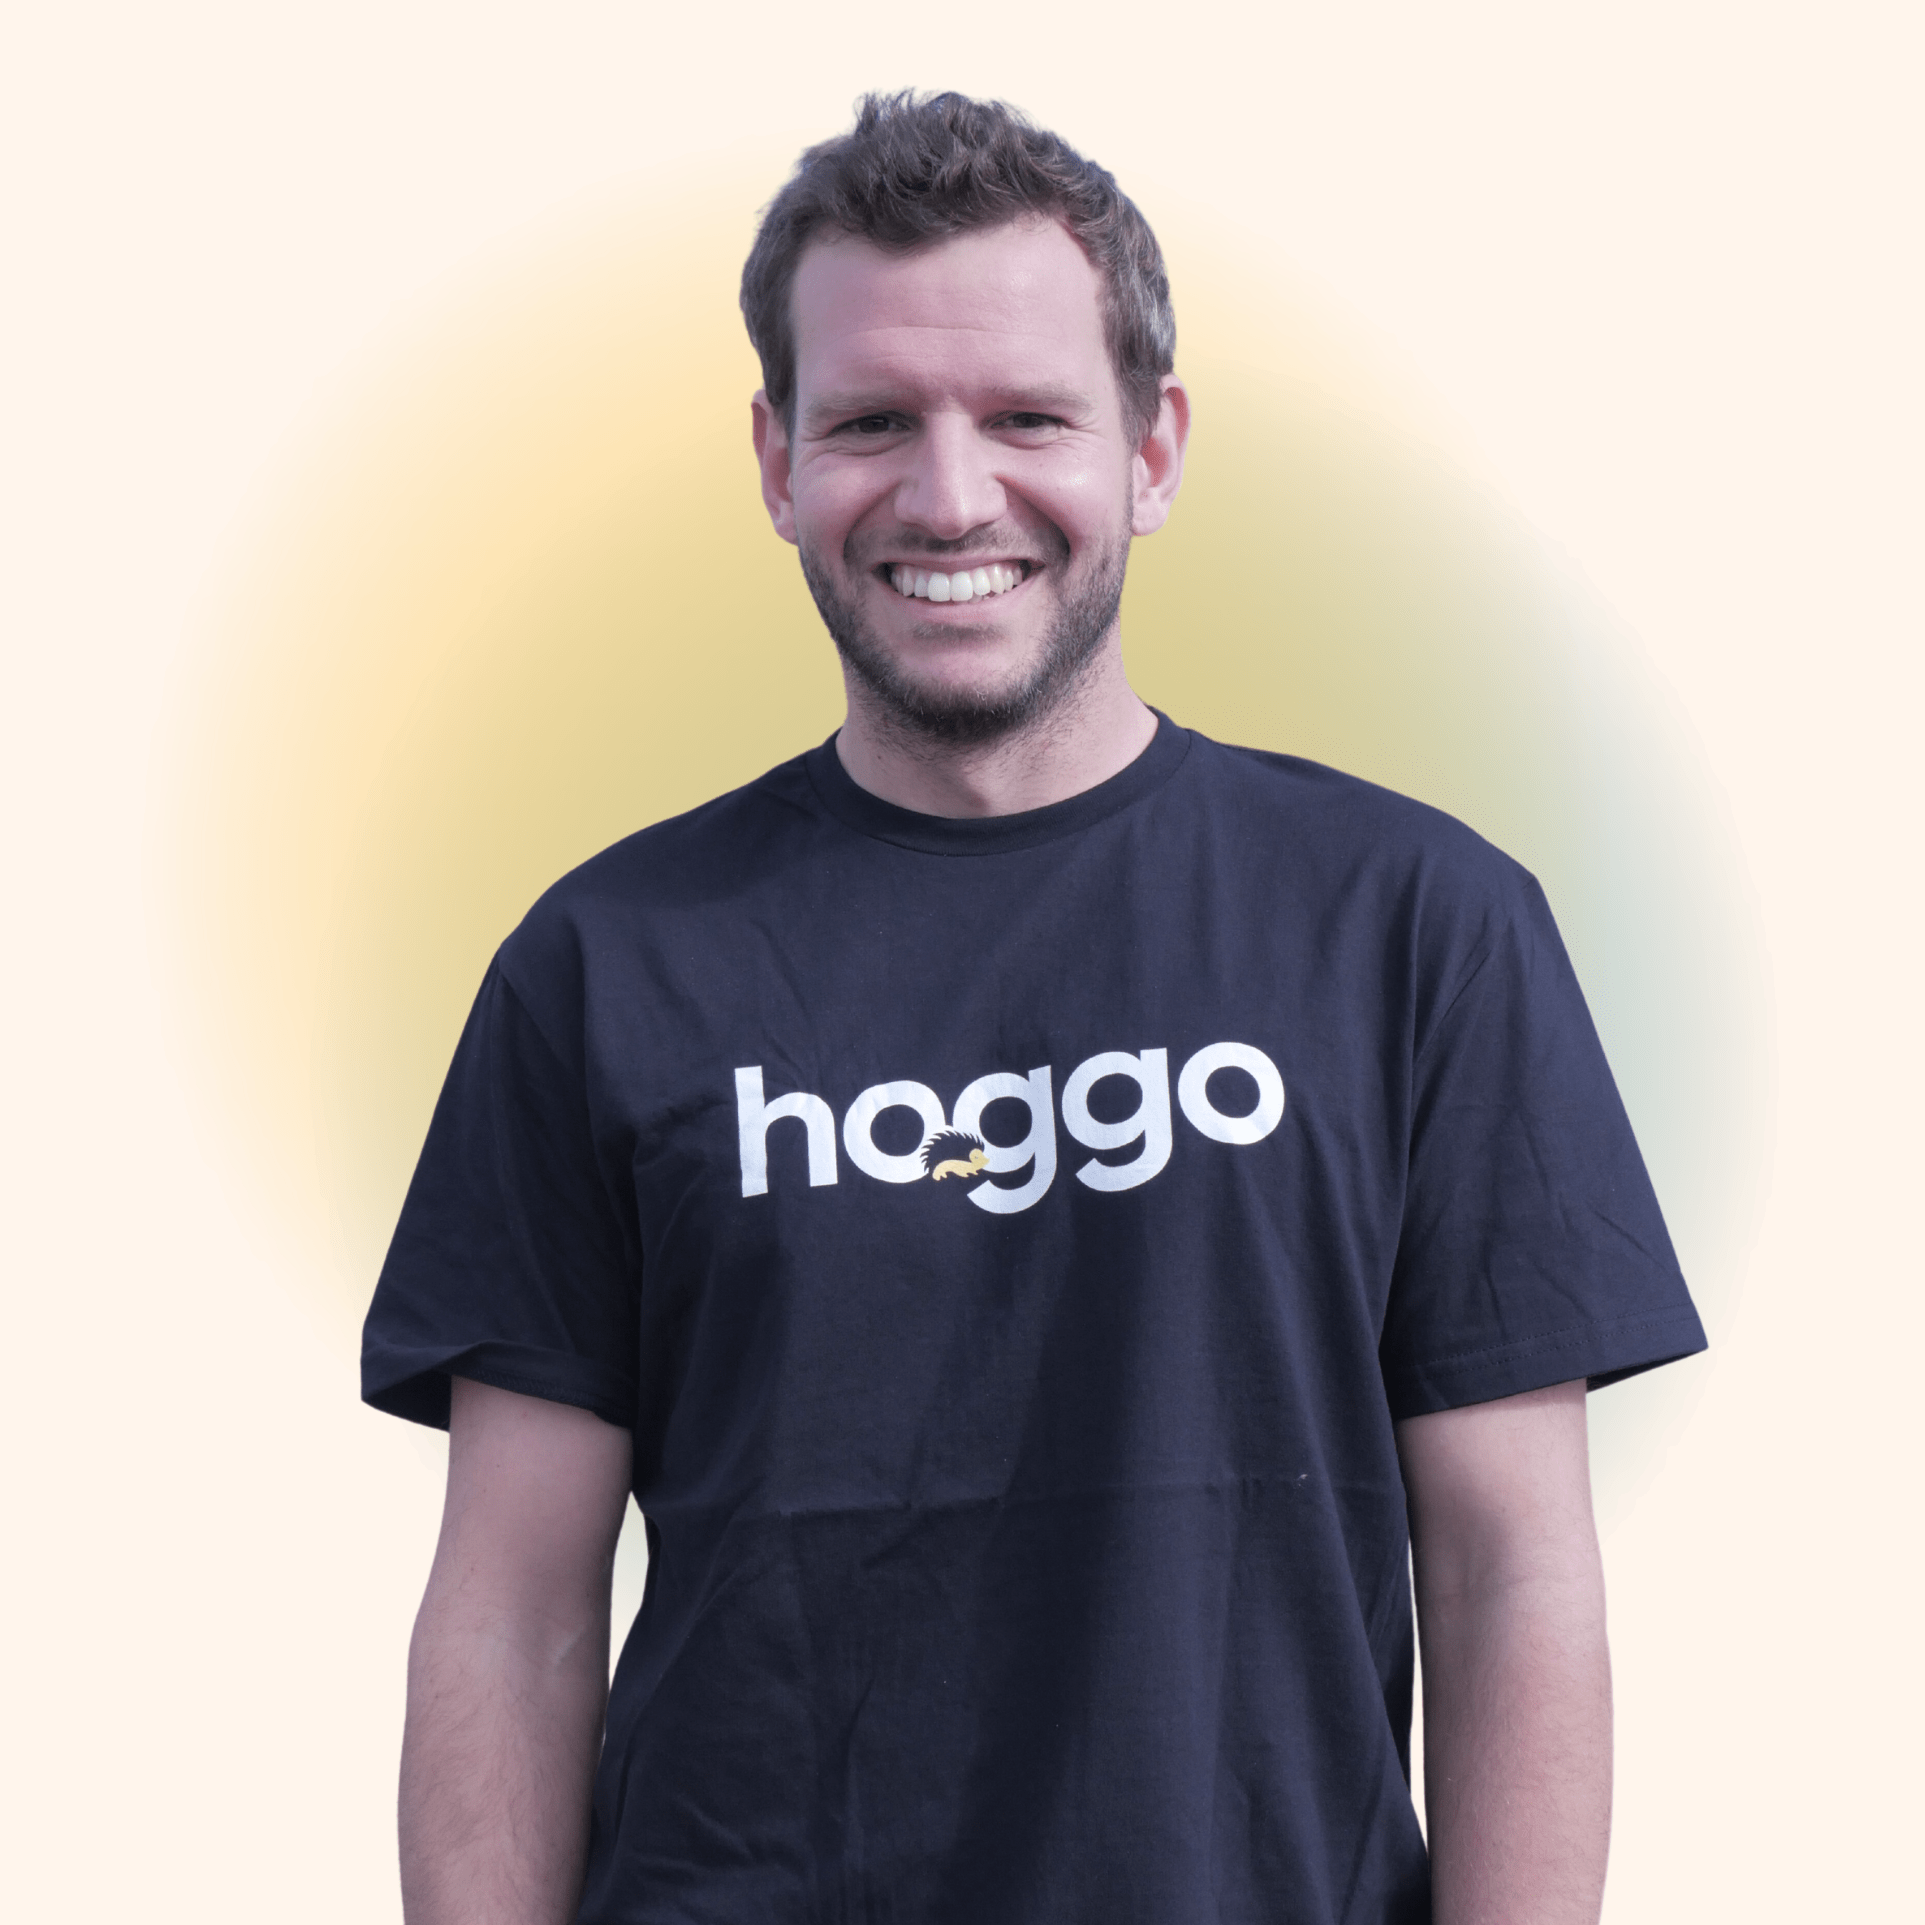 hoggo vendor risk assessments